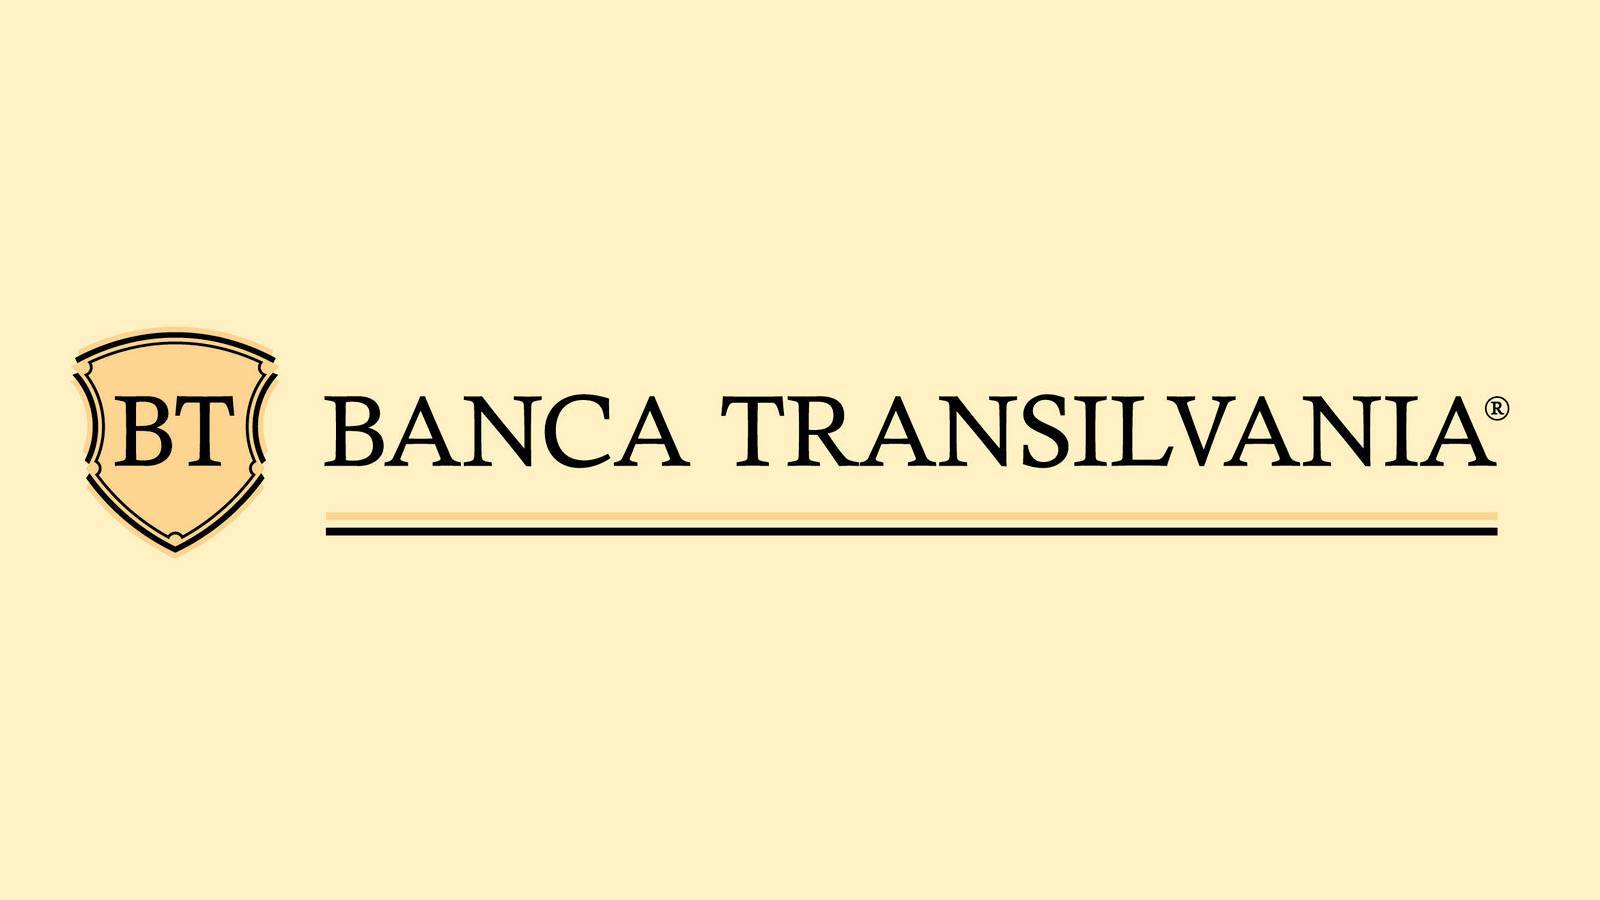 Decisión de BANCA Transilvania anunciada OFICIALMENTE Los clientes deben saberlo